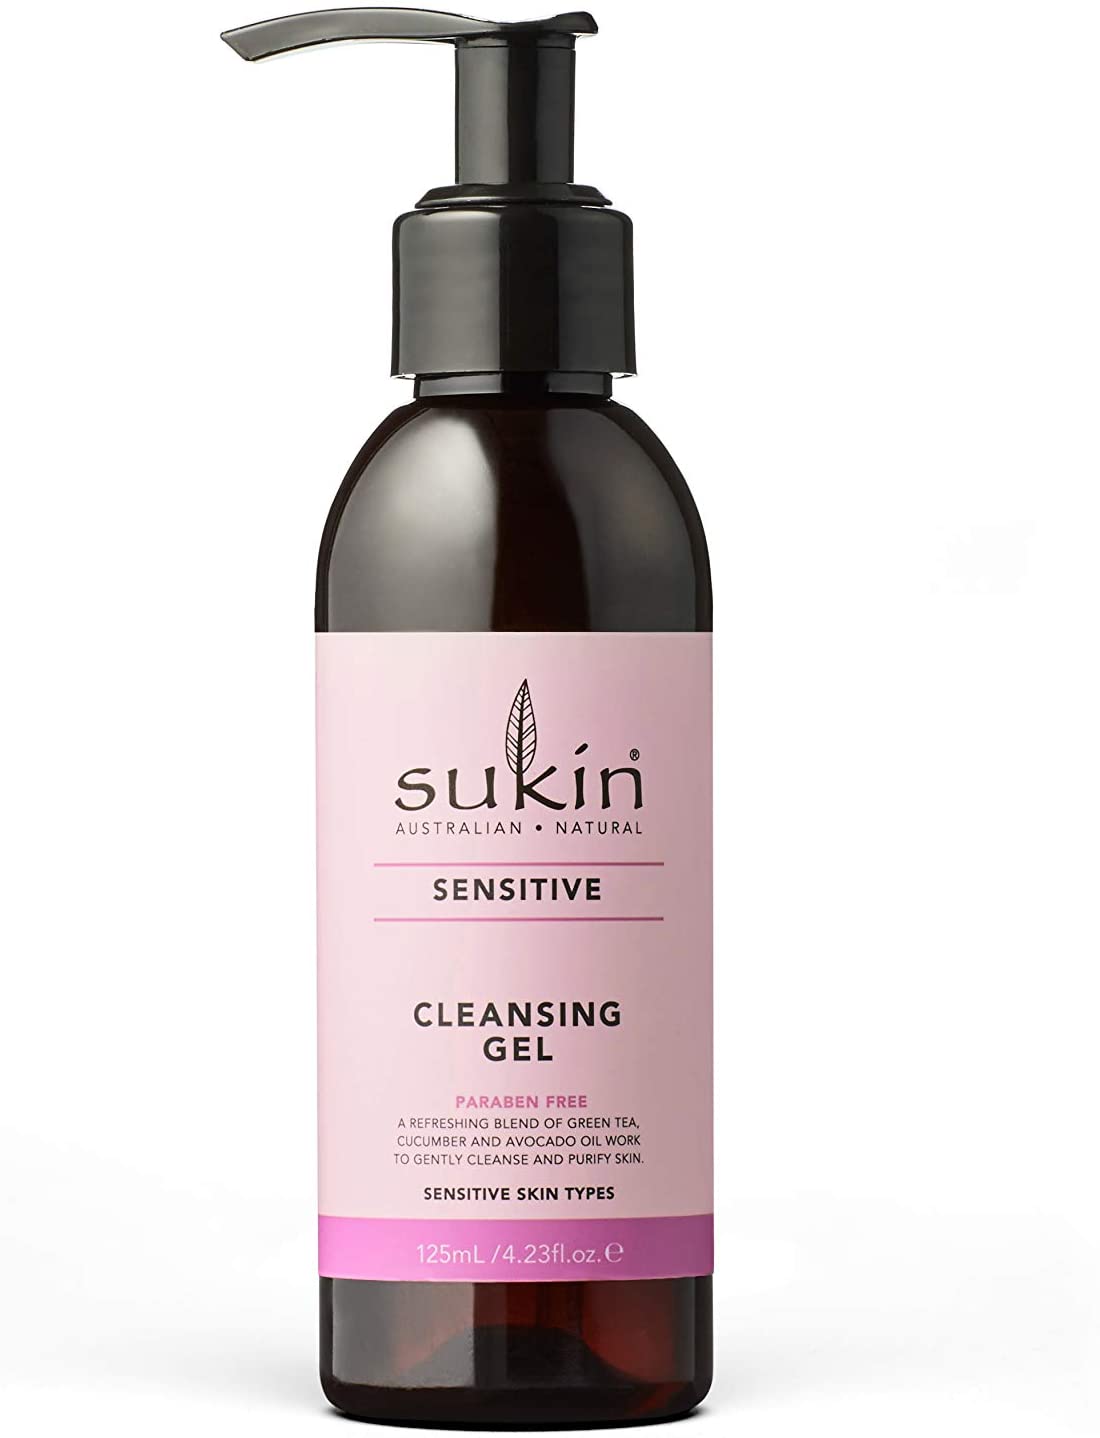 Sukin Sensitive Cleansing Gel 125ml